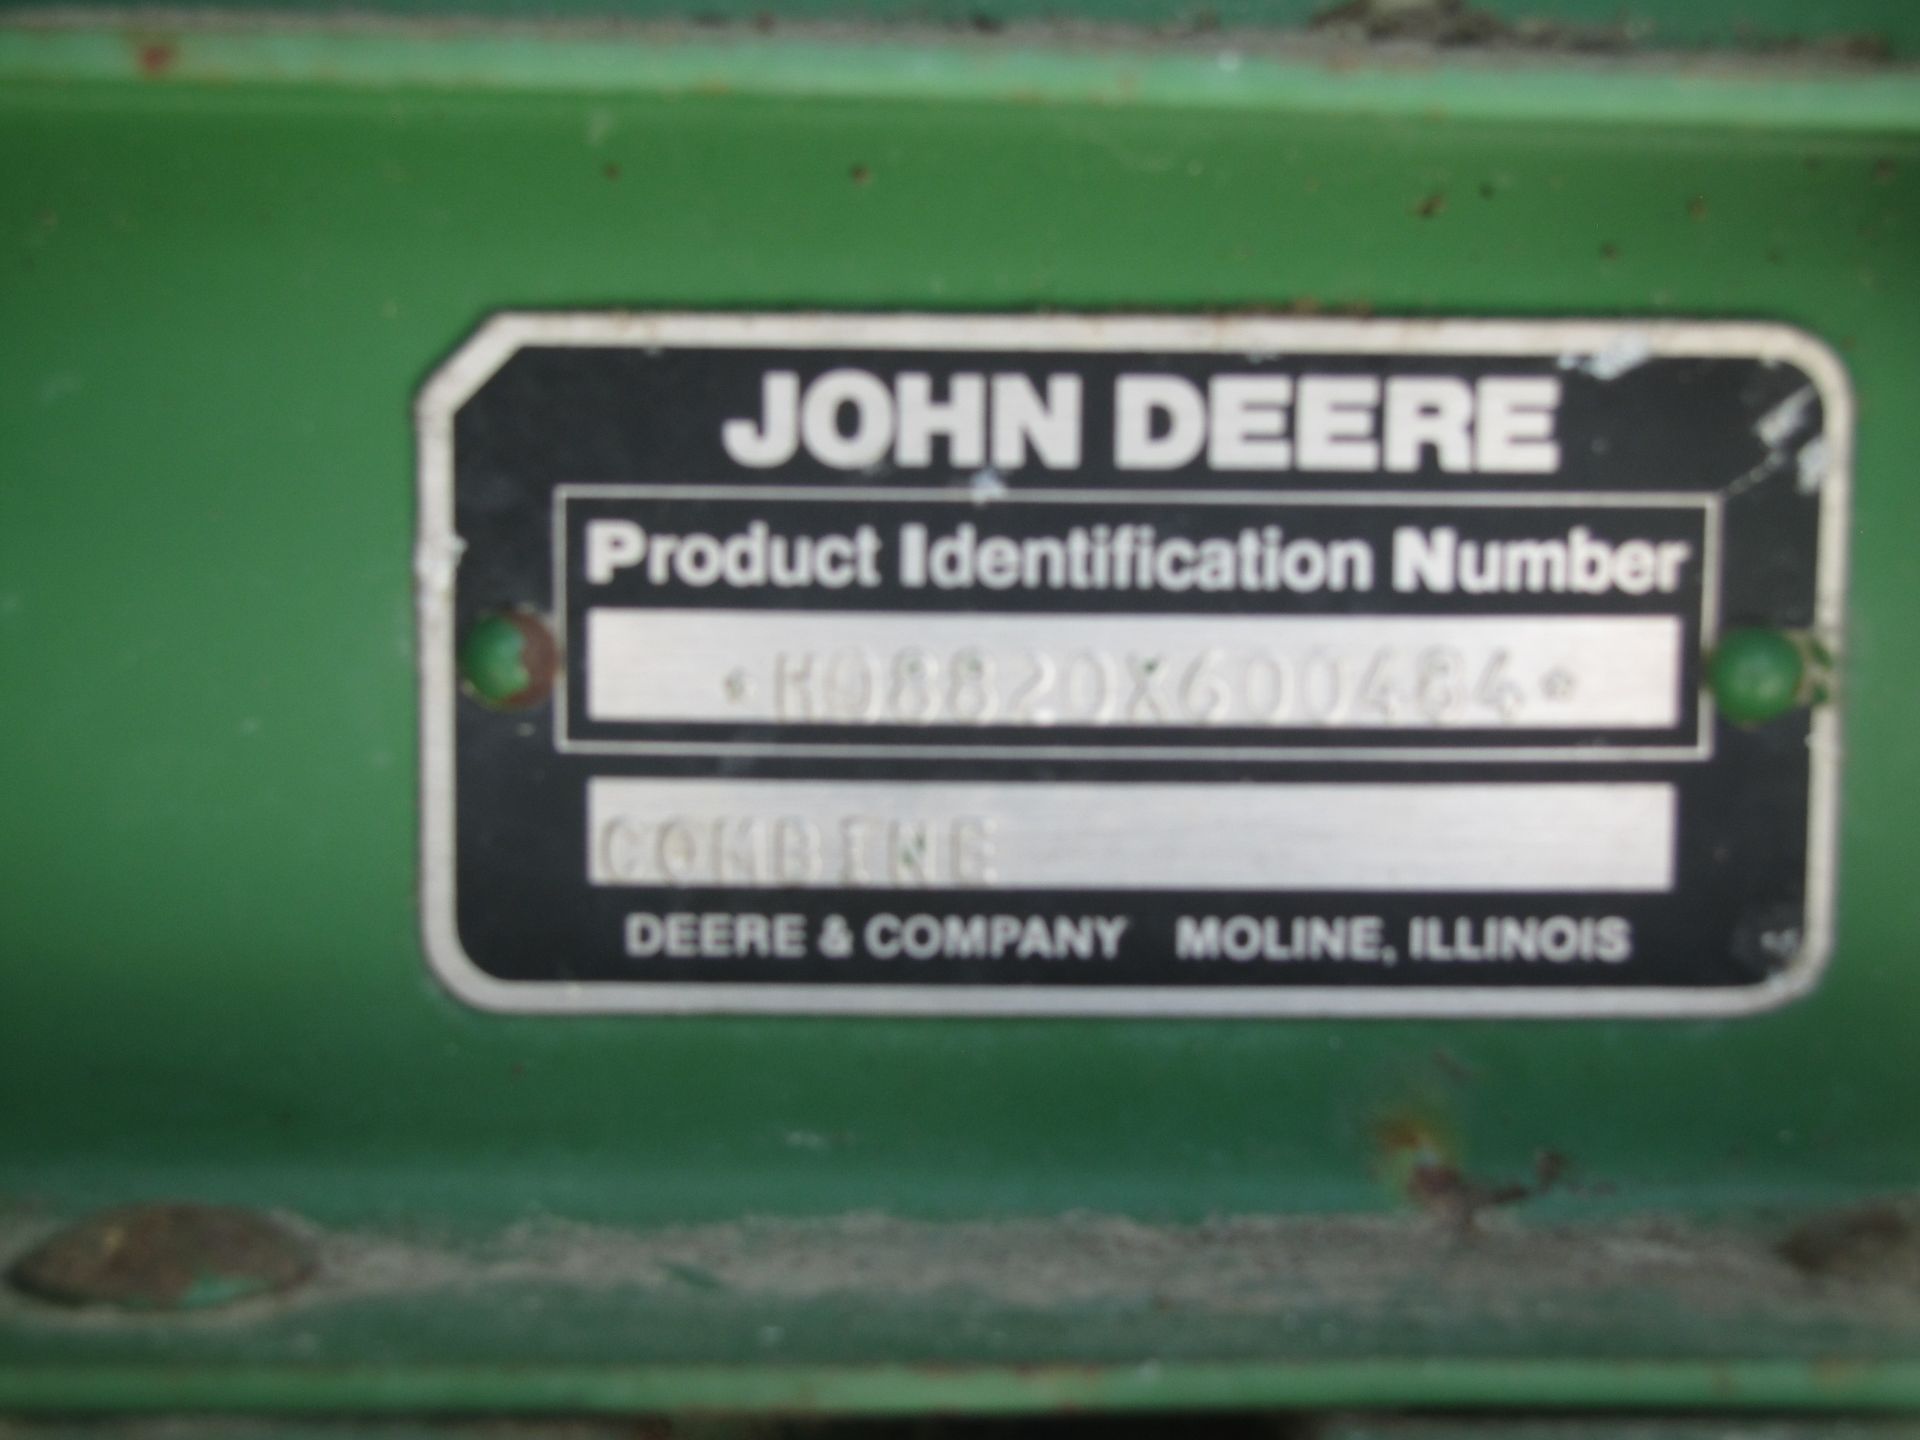 John Deere 8820 yellow top combine - Image 20 of 41